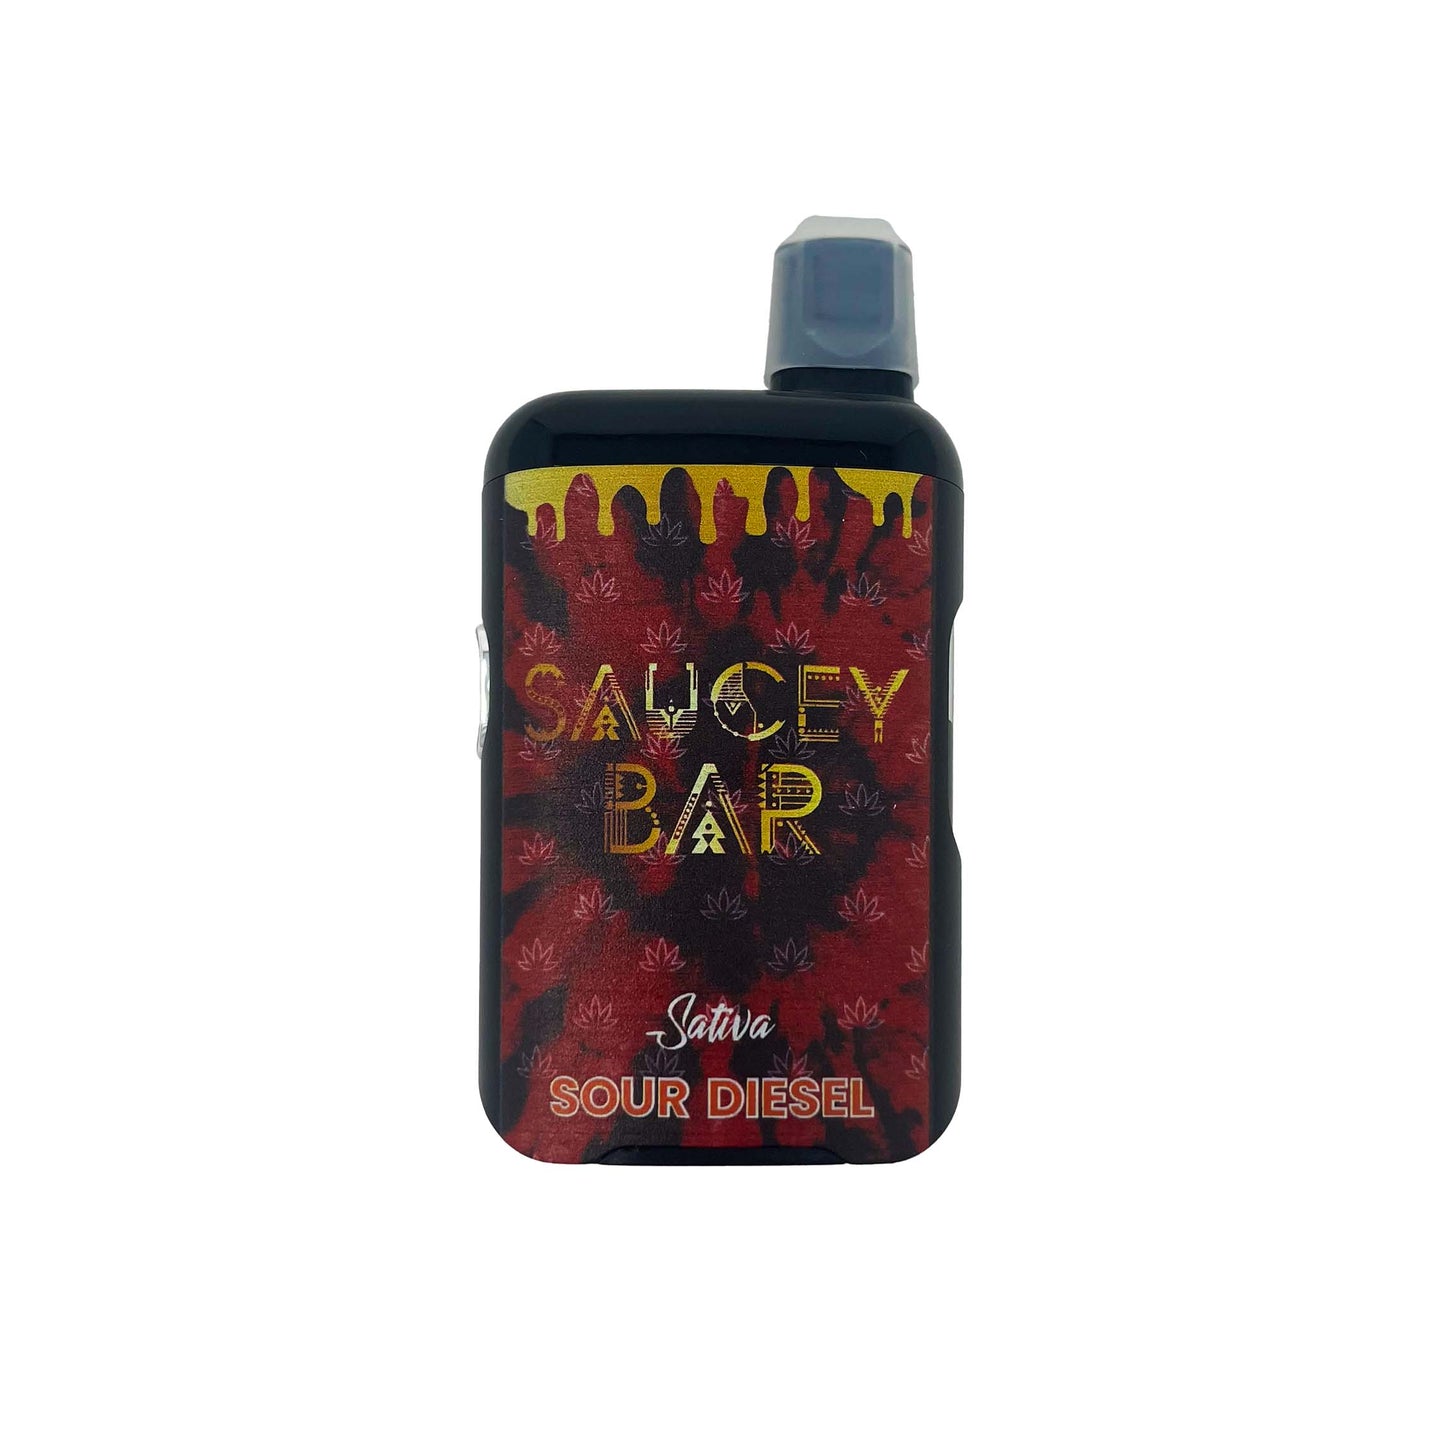 Saucey Bar D9o 3ml (6pk) Disposable